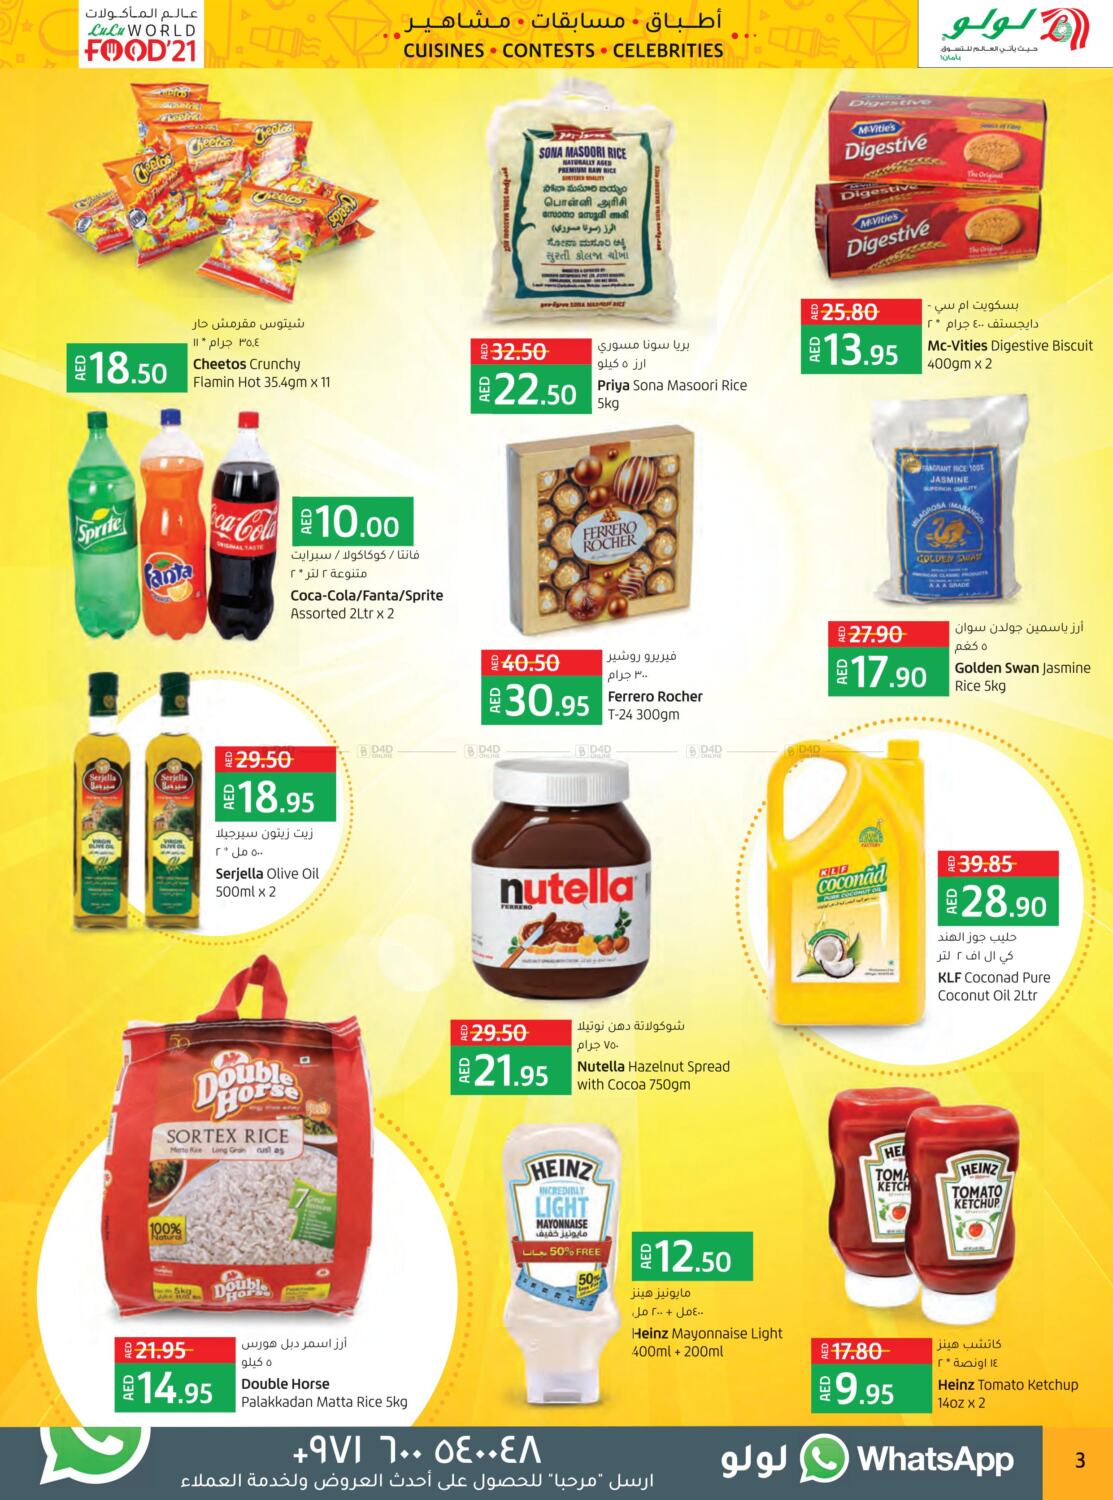 World Food 21 - Abu Dhabi & Al Ain from Lulu until 9th March - Lulu UAE  Offers & Promotions